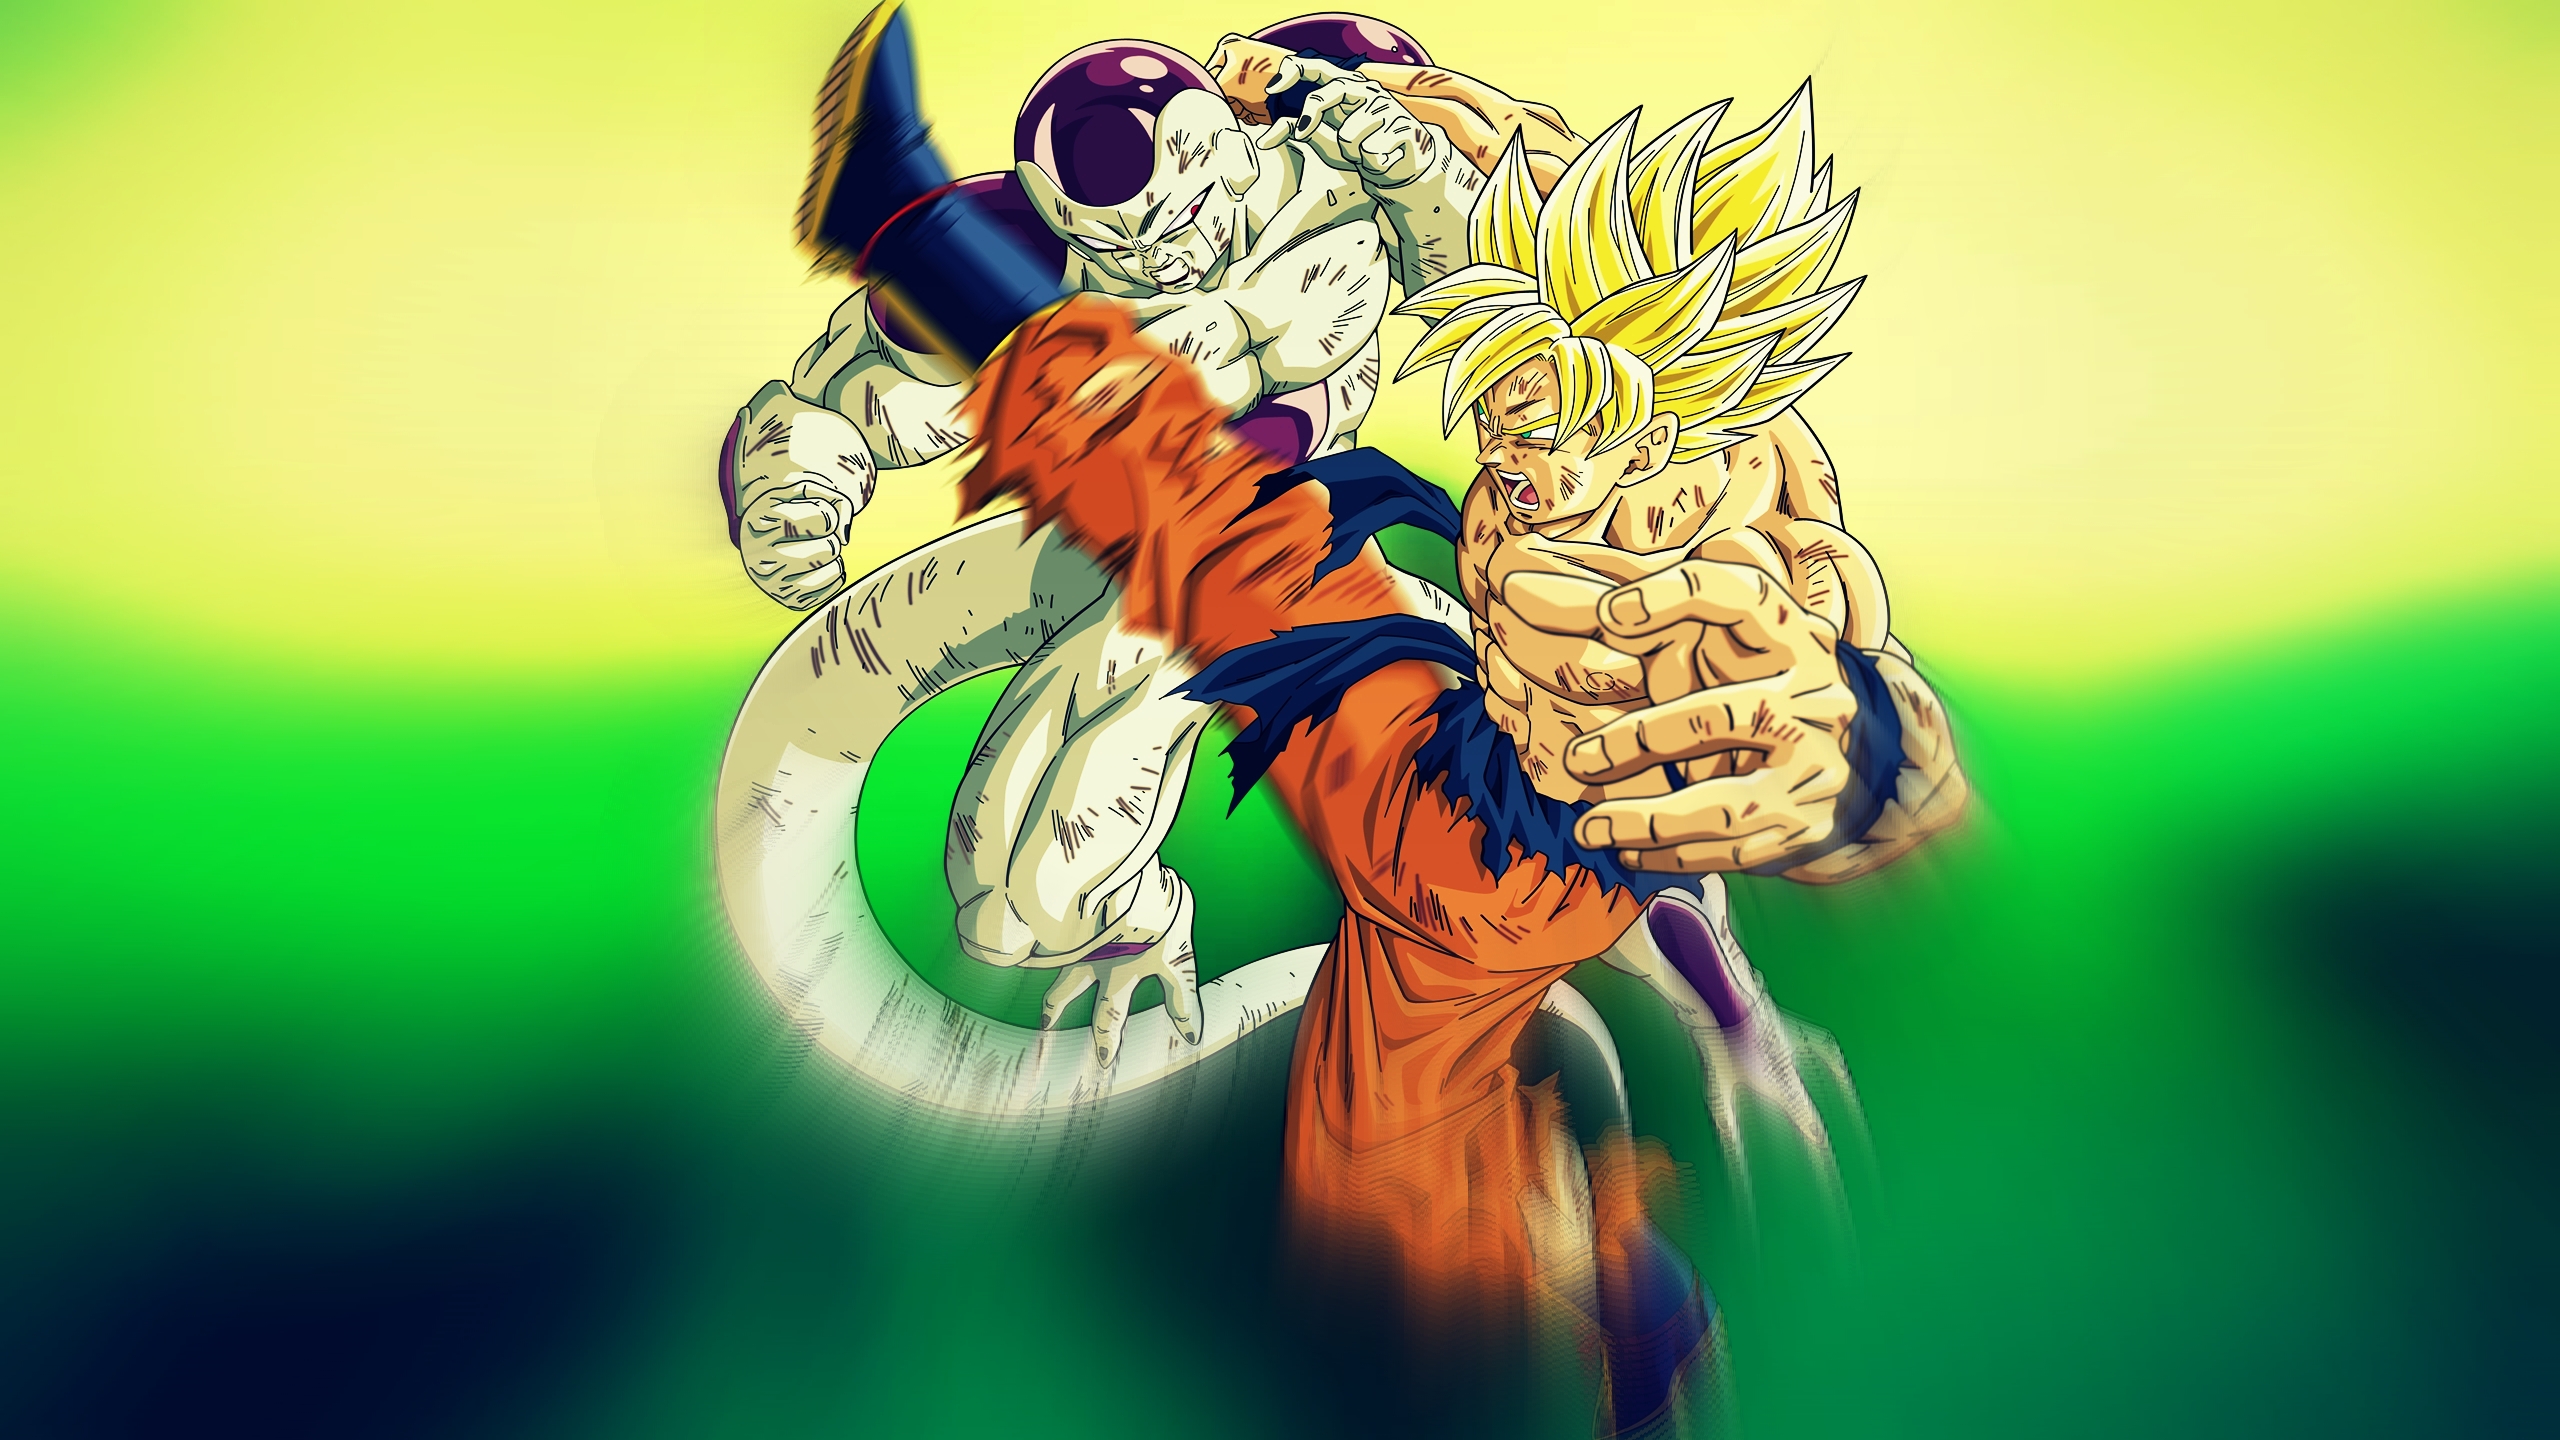 Goku vs Frieza Wallpapers  Top Free Goku vs Frieza Backgrounds   WallpaperAccess